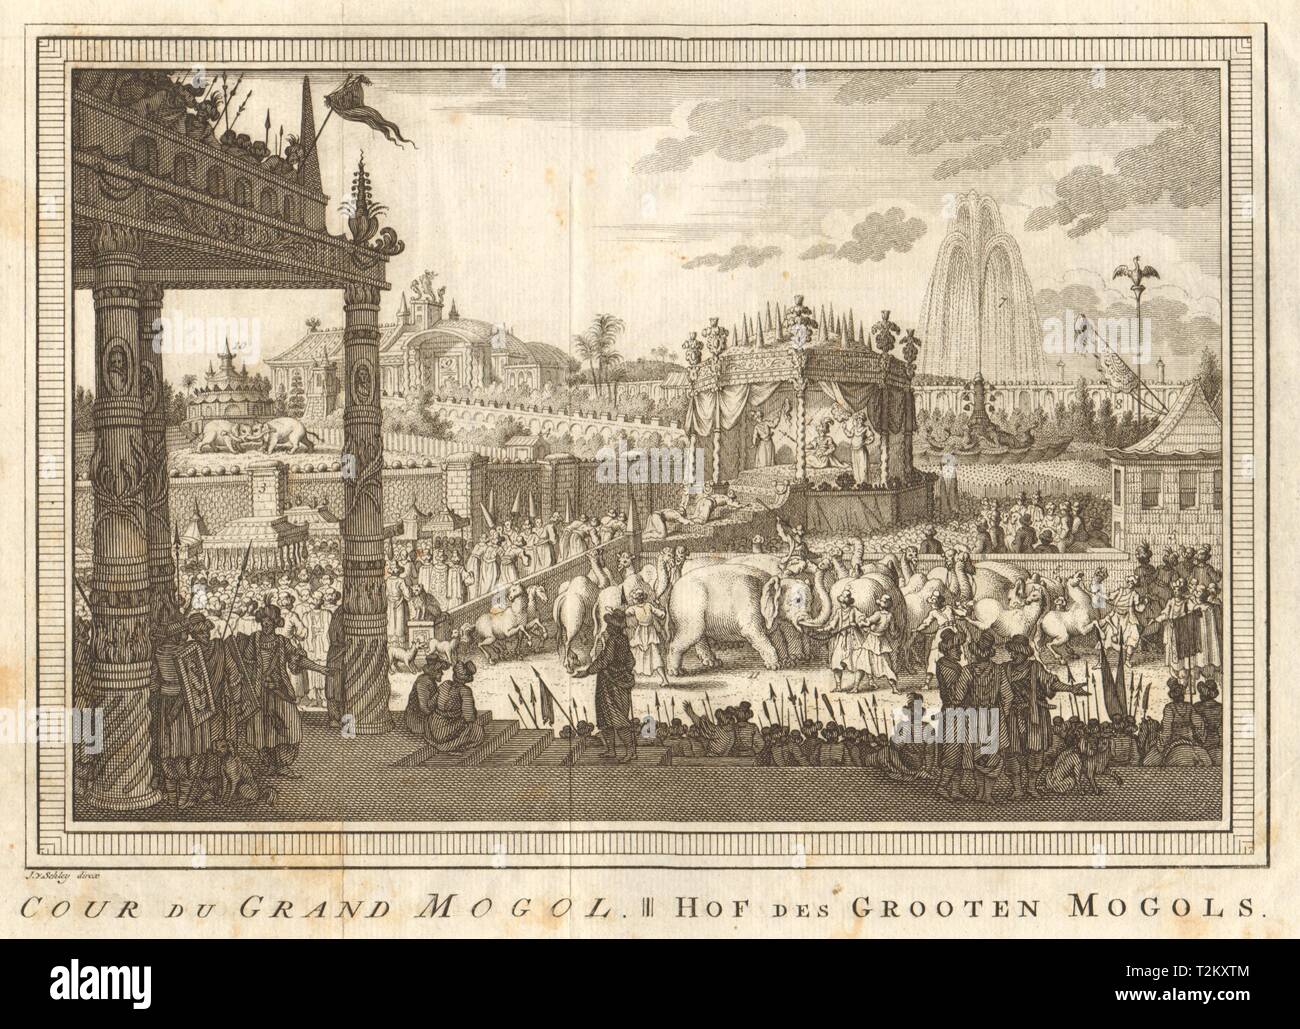 'Cour du Grand Mogol". Cour de l'empereur moghol, Delhi, Inde. SCHLEY 1755 Banque D'Images